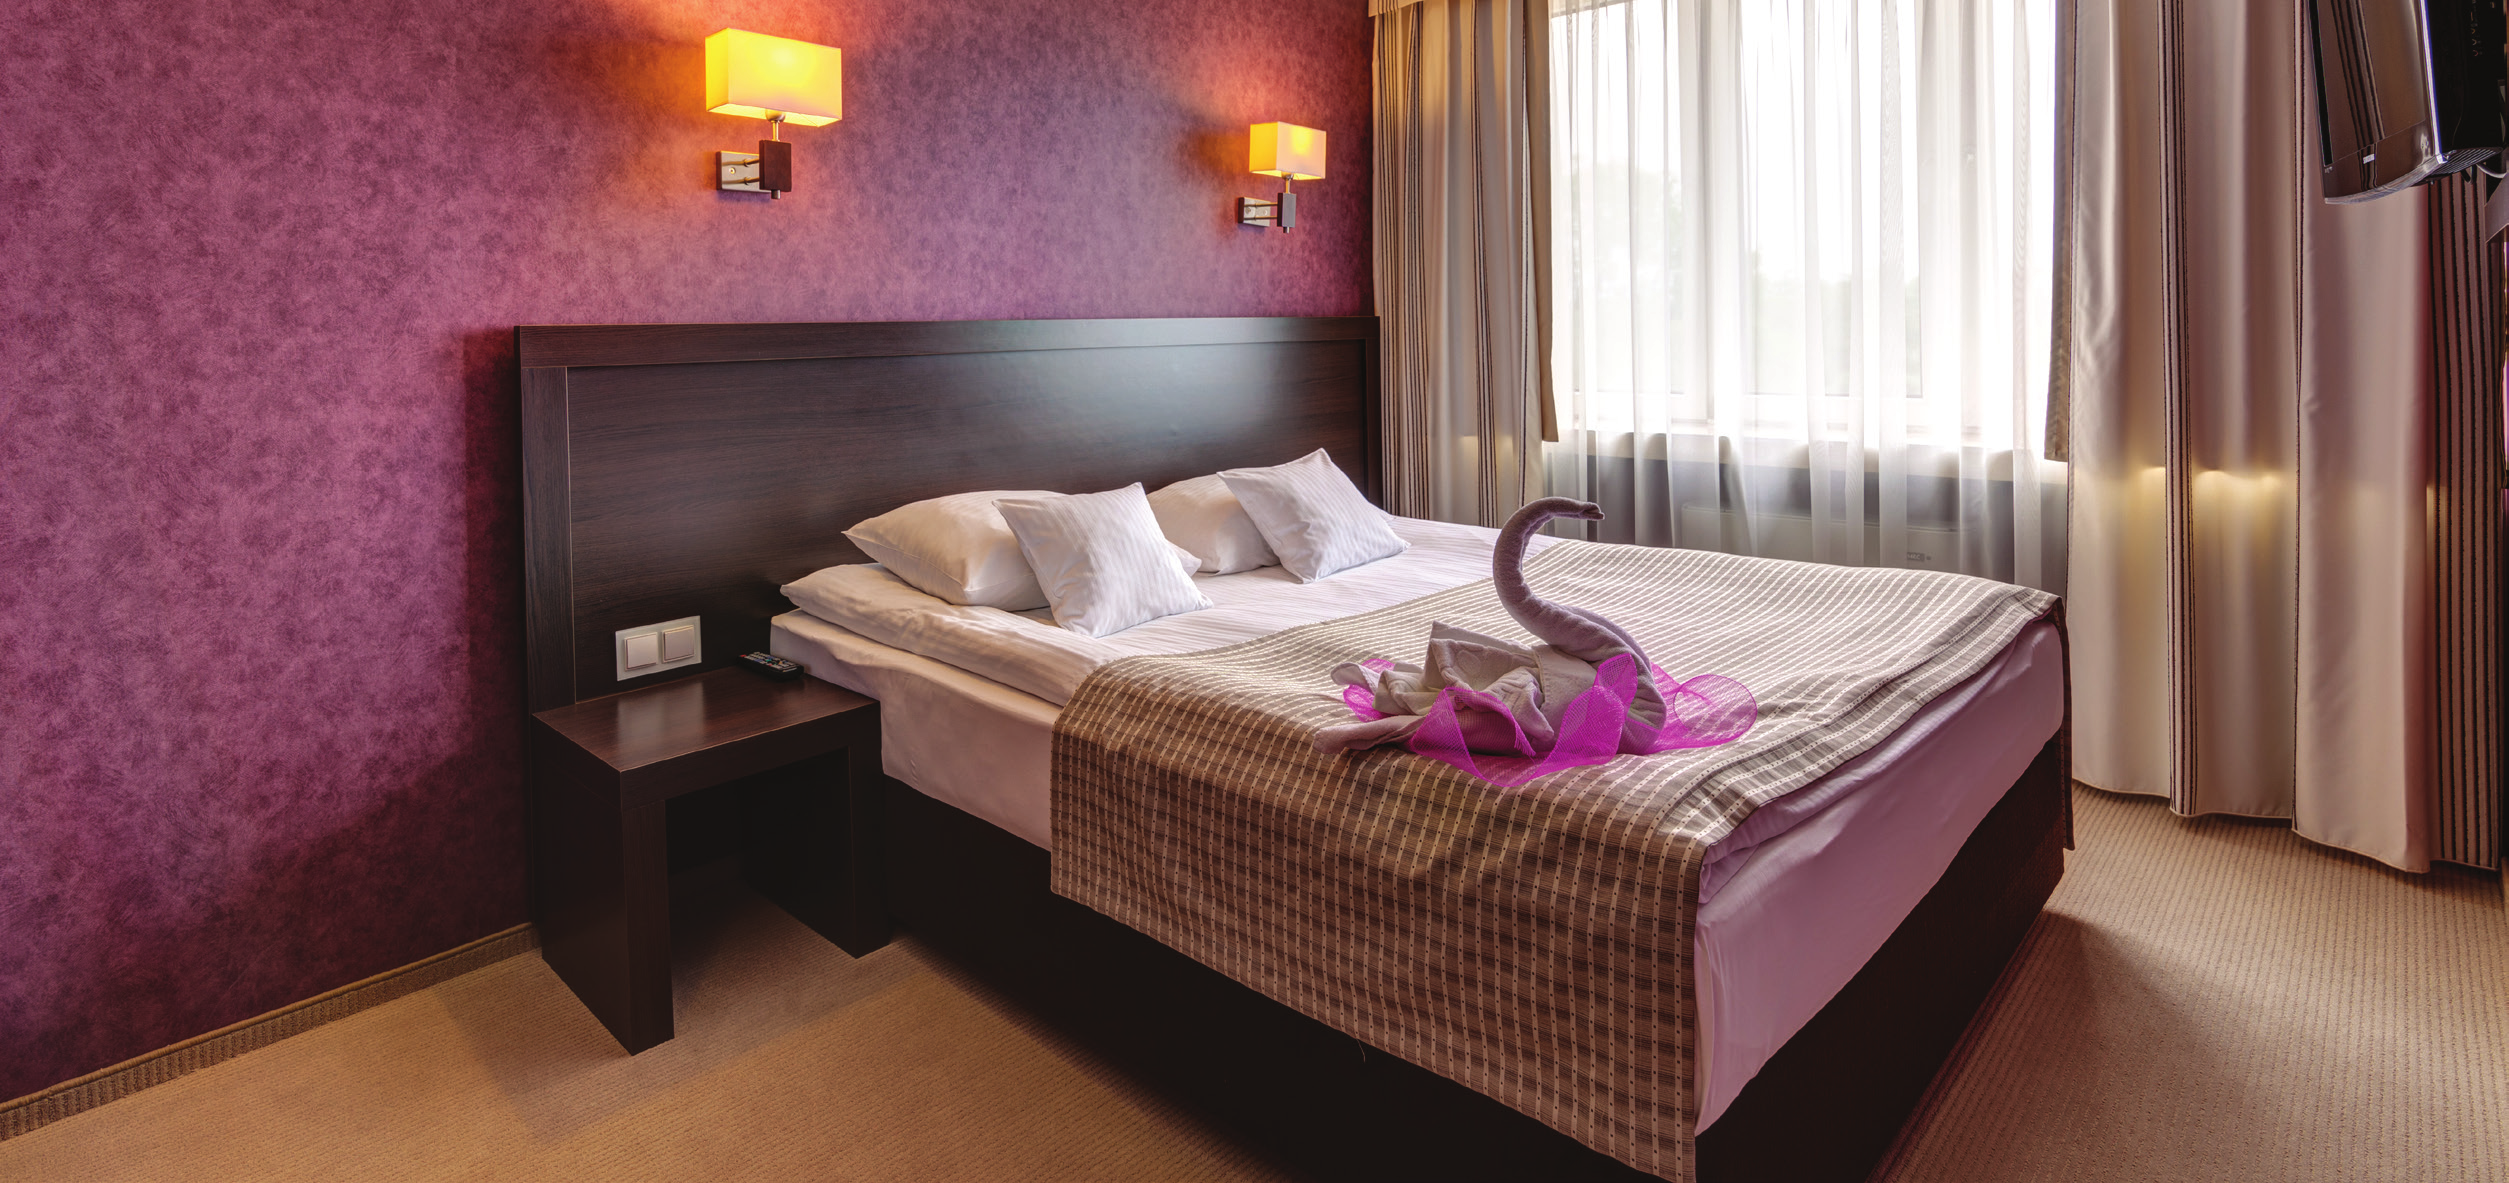 Oferta noclegowa: Hotel Beskid oferuje swoim gościom 72 pokoje dla łącznej ilości 128 osób.